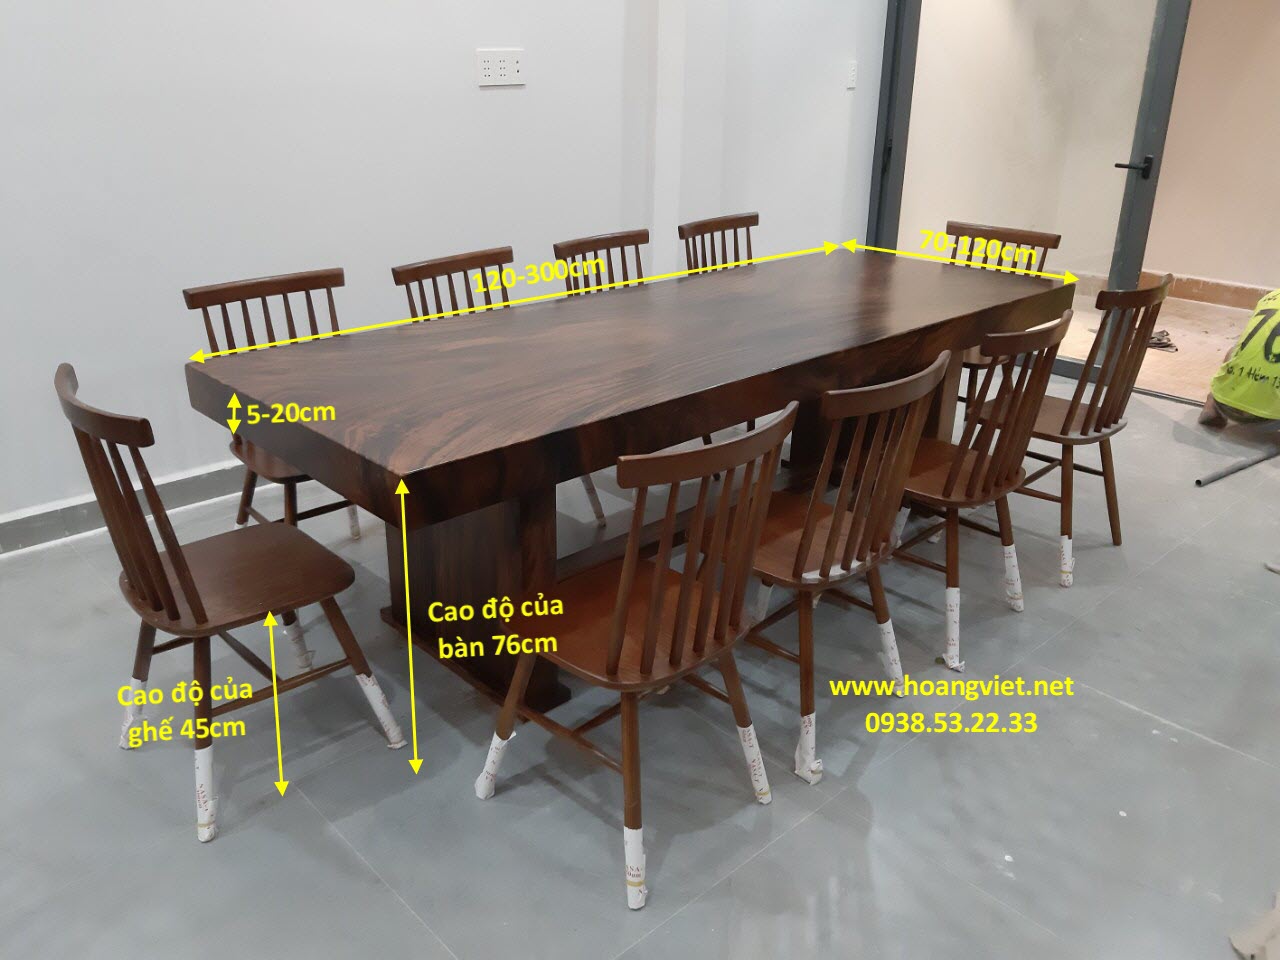 Cùng khám phá hình ảnh về kích thước bàn ghế gỗ nguyên khối để tìm hiểu về sự đơn giản và bền vững của sản phẩm này. Với kích thước phù hợp, bộ bàn ghế này sẽ là lựa chọn lý tưởng cho các vị khách có gu thẩm mỹ cao.